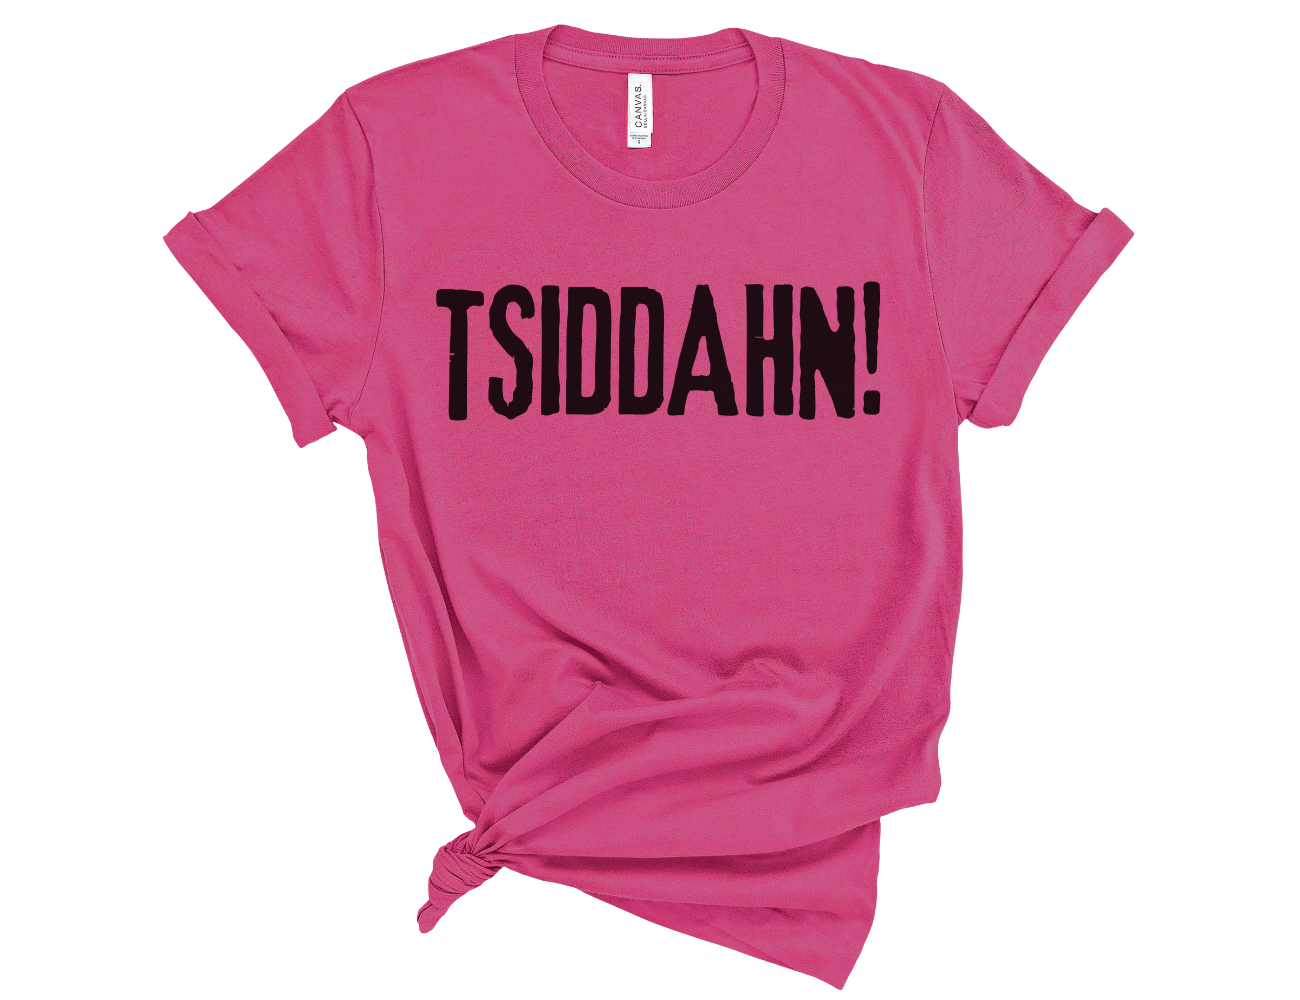 Funny Teacher Sit Down "Tsiddhan" Unisex T-Shirt